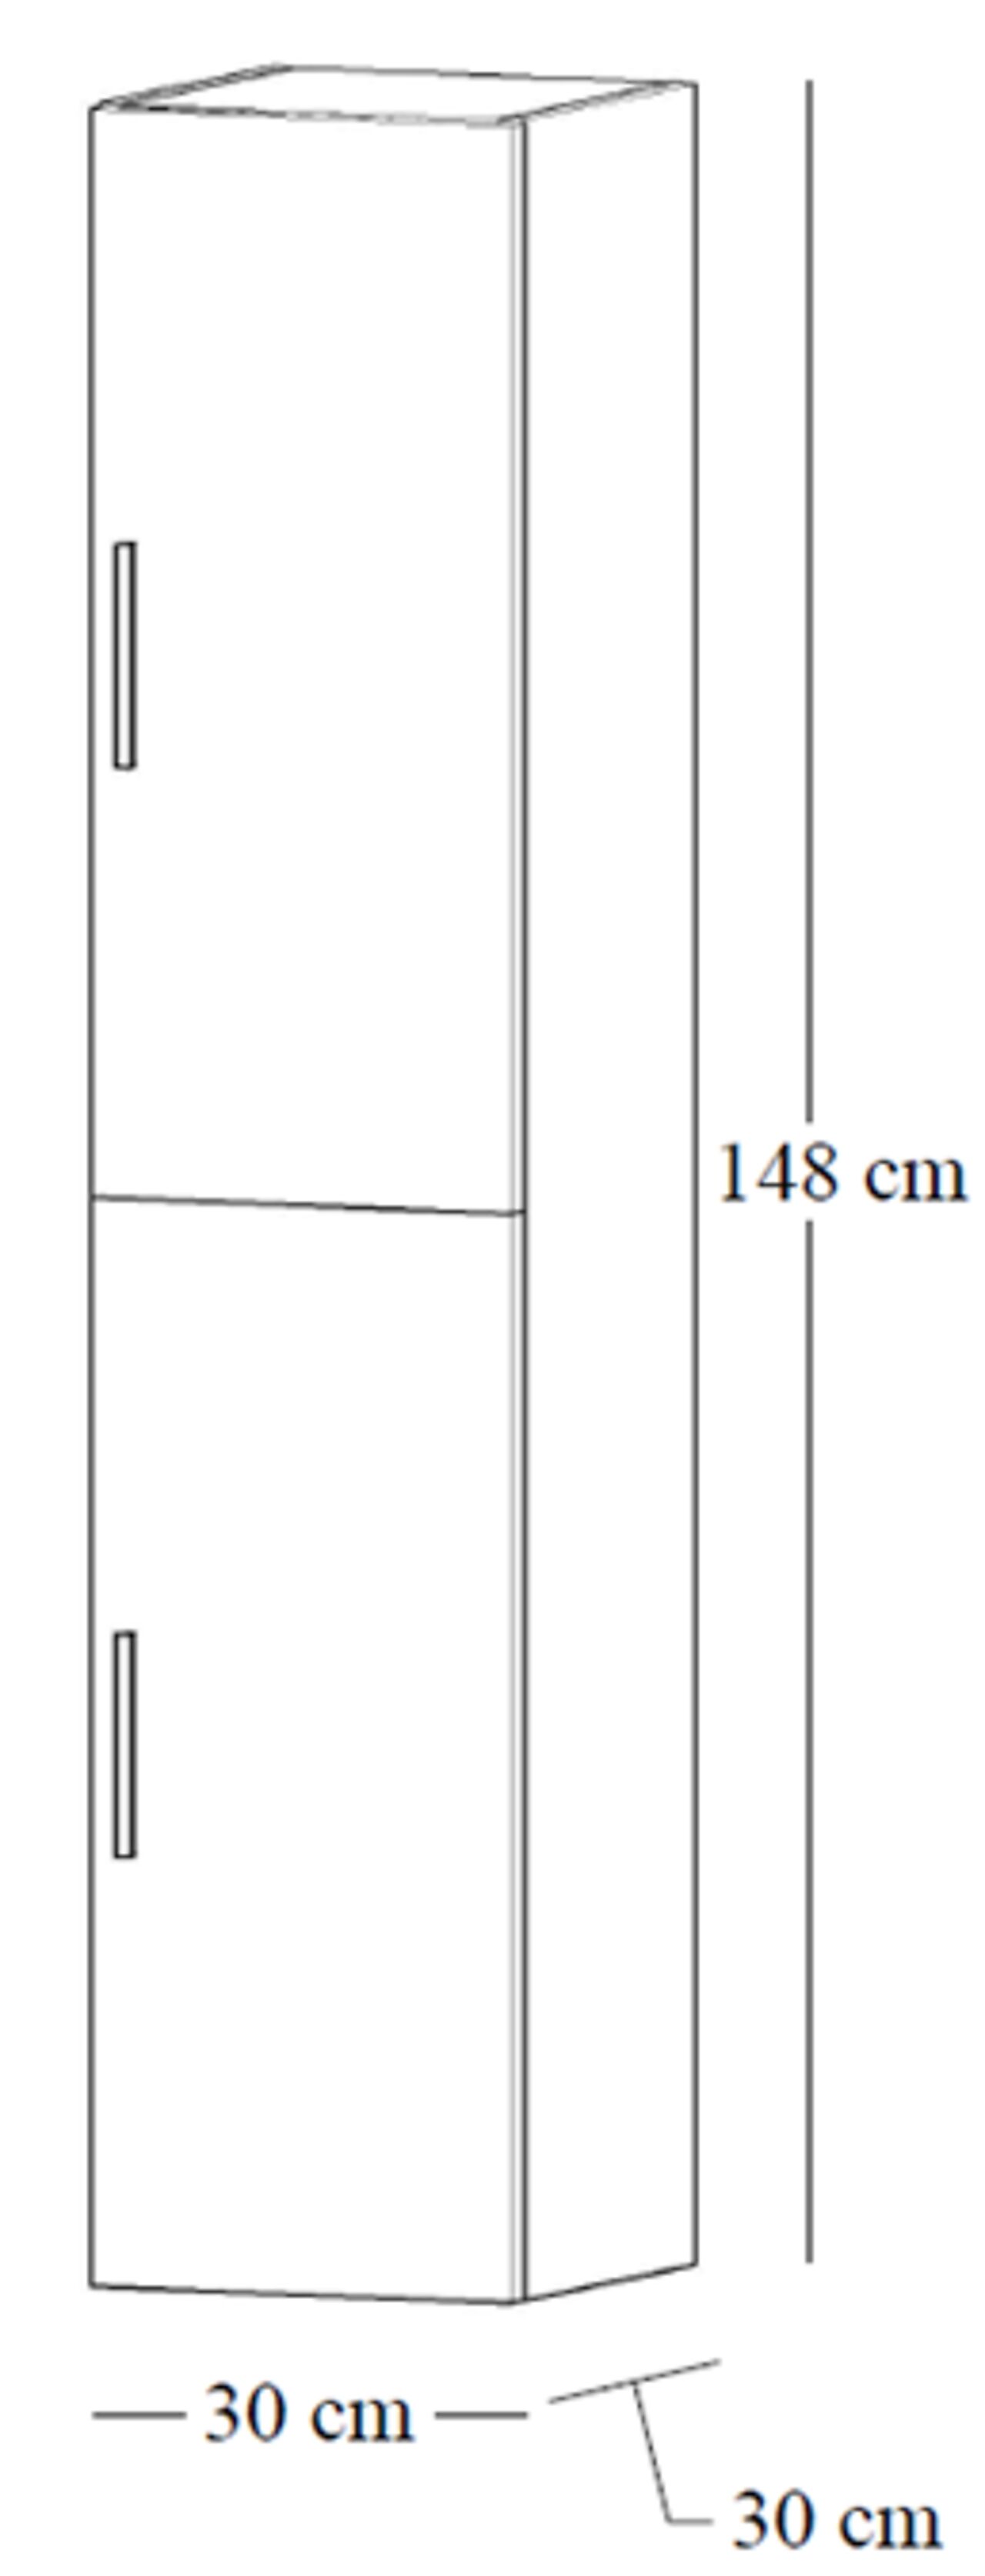 Alterna Alterna Malin 30 cm høyskap med 2 dører hvit matt 1